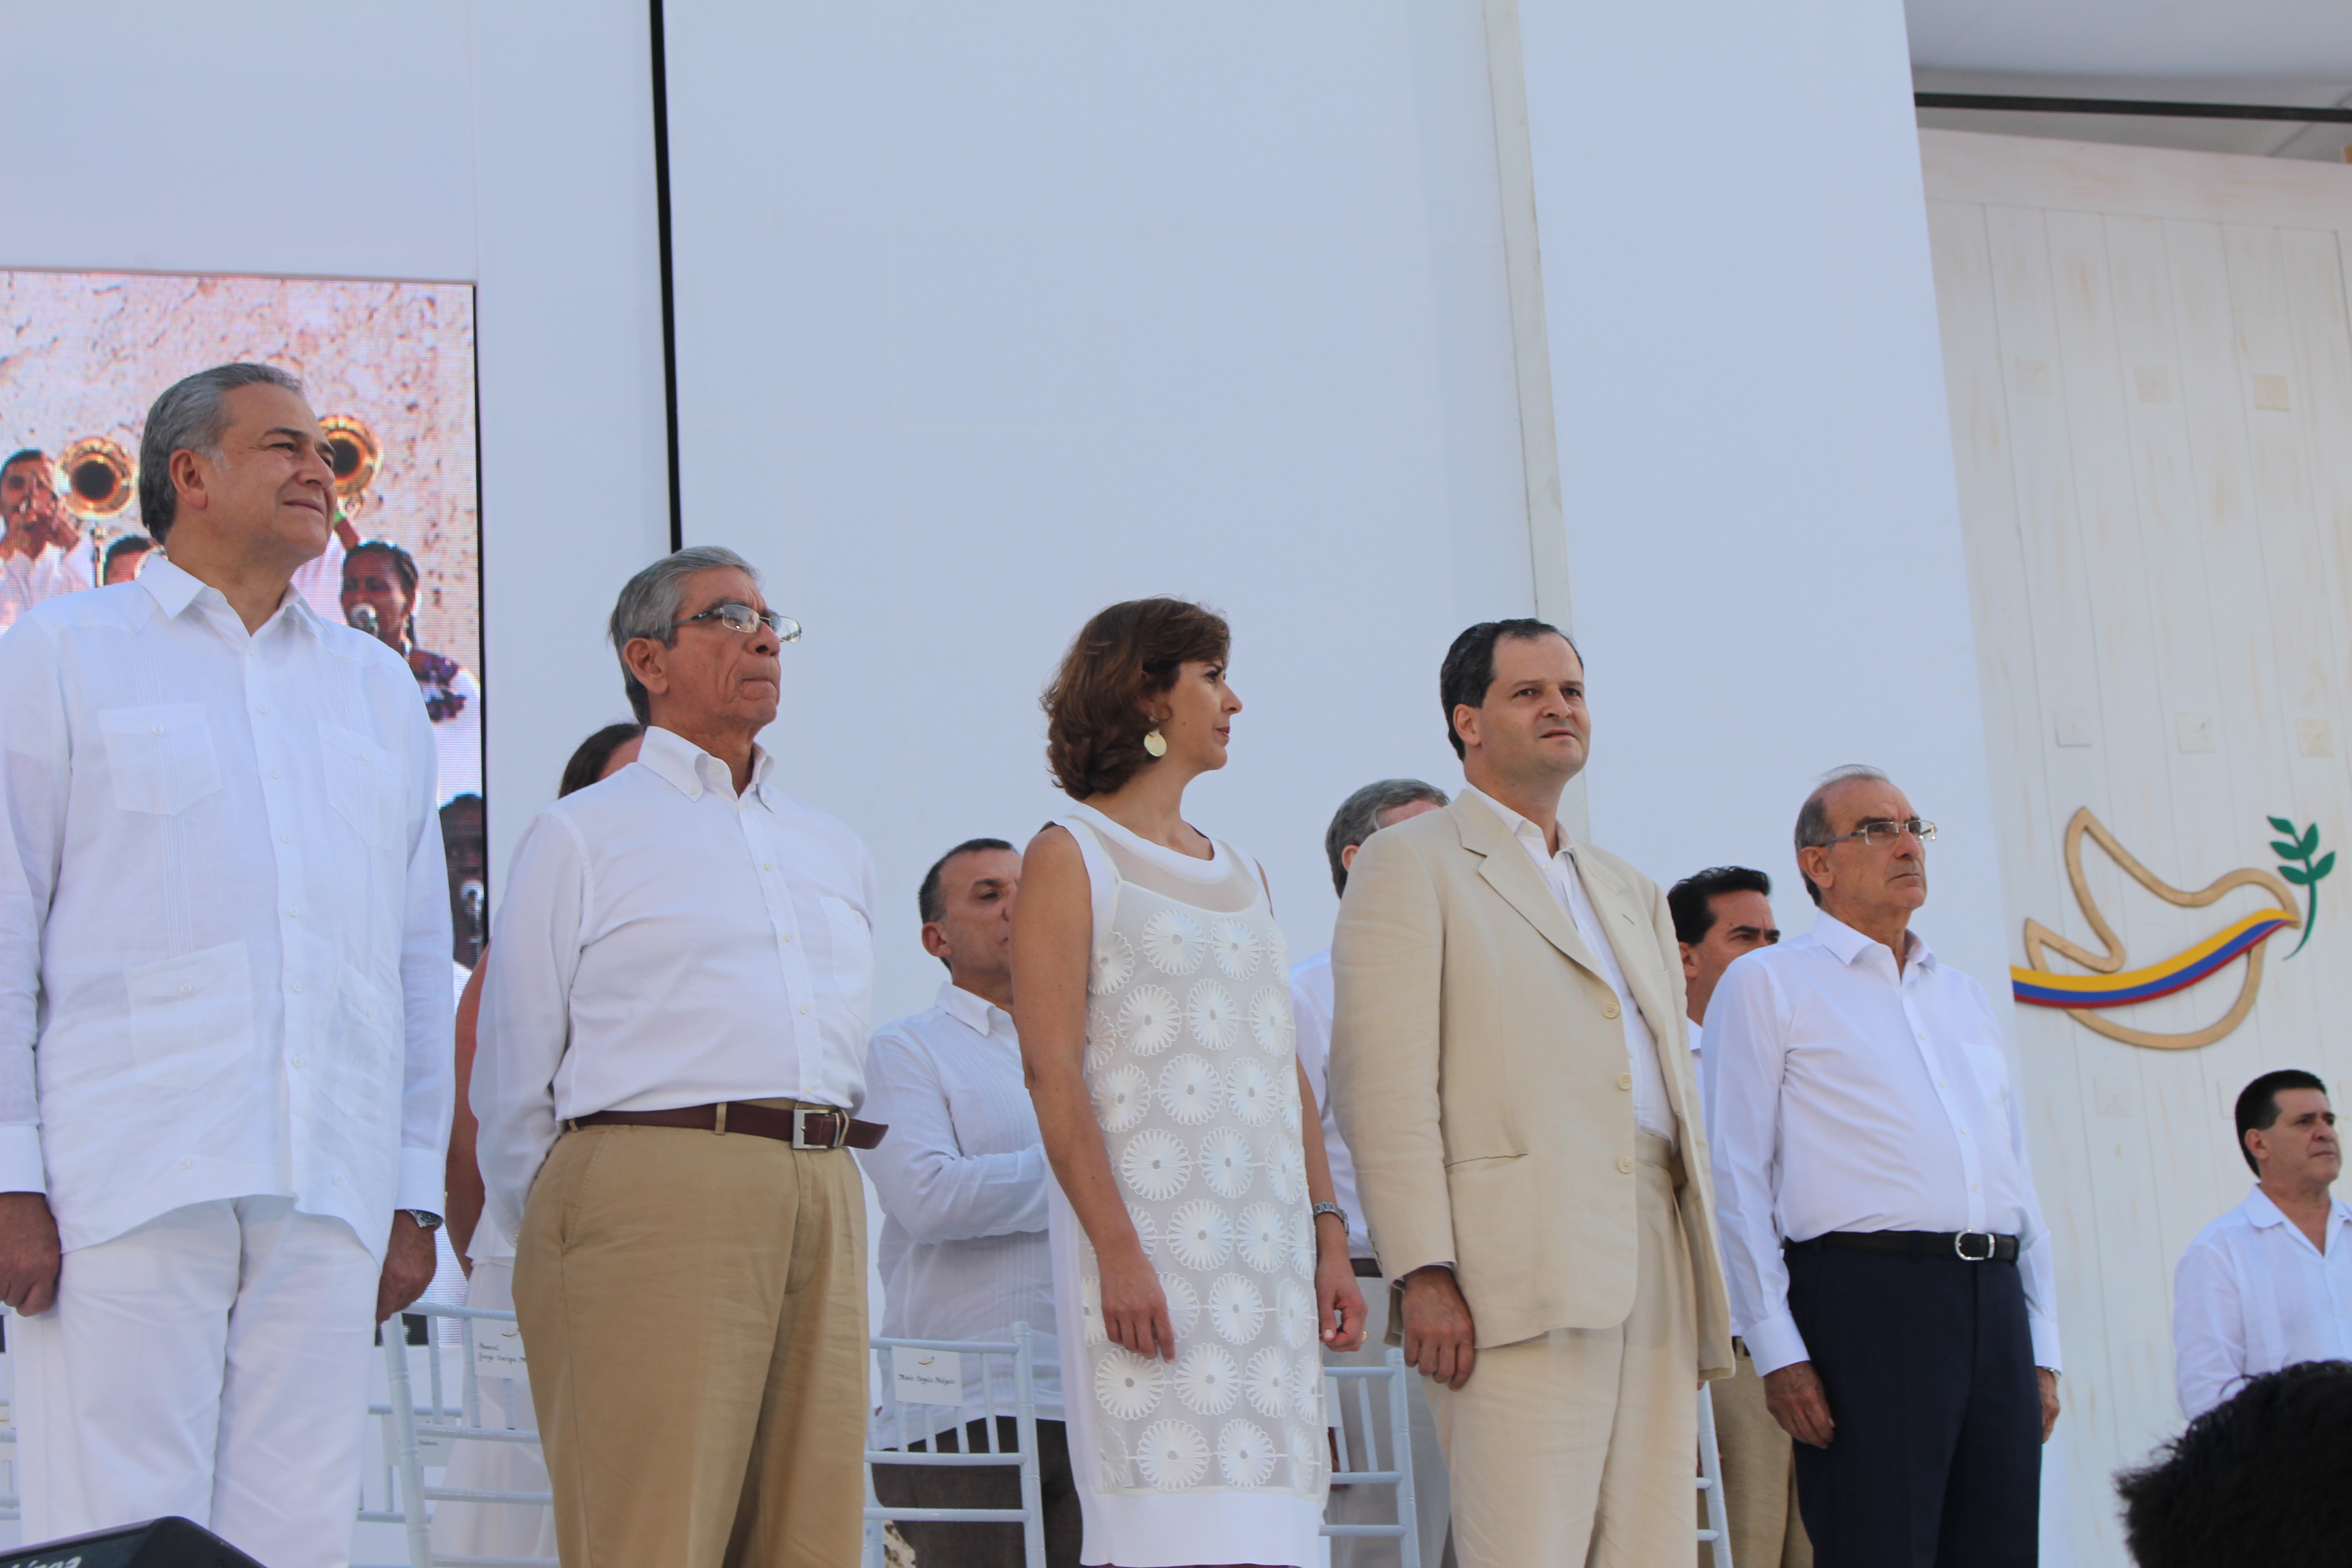 Equipo Negociador del proceso de paz en La Habana fue aplaudido por todos los asistentes a la ceremonia de la firma de la paz